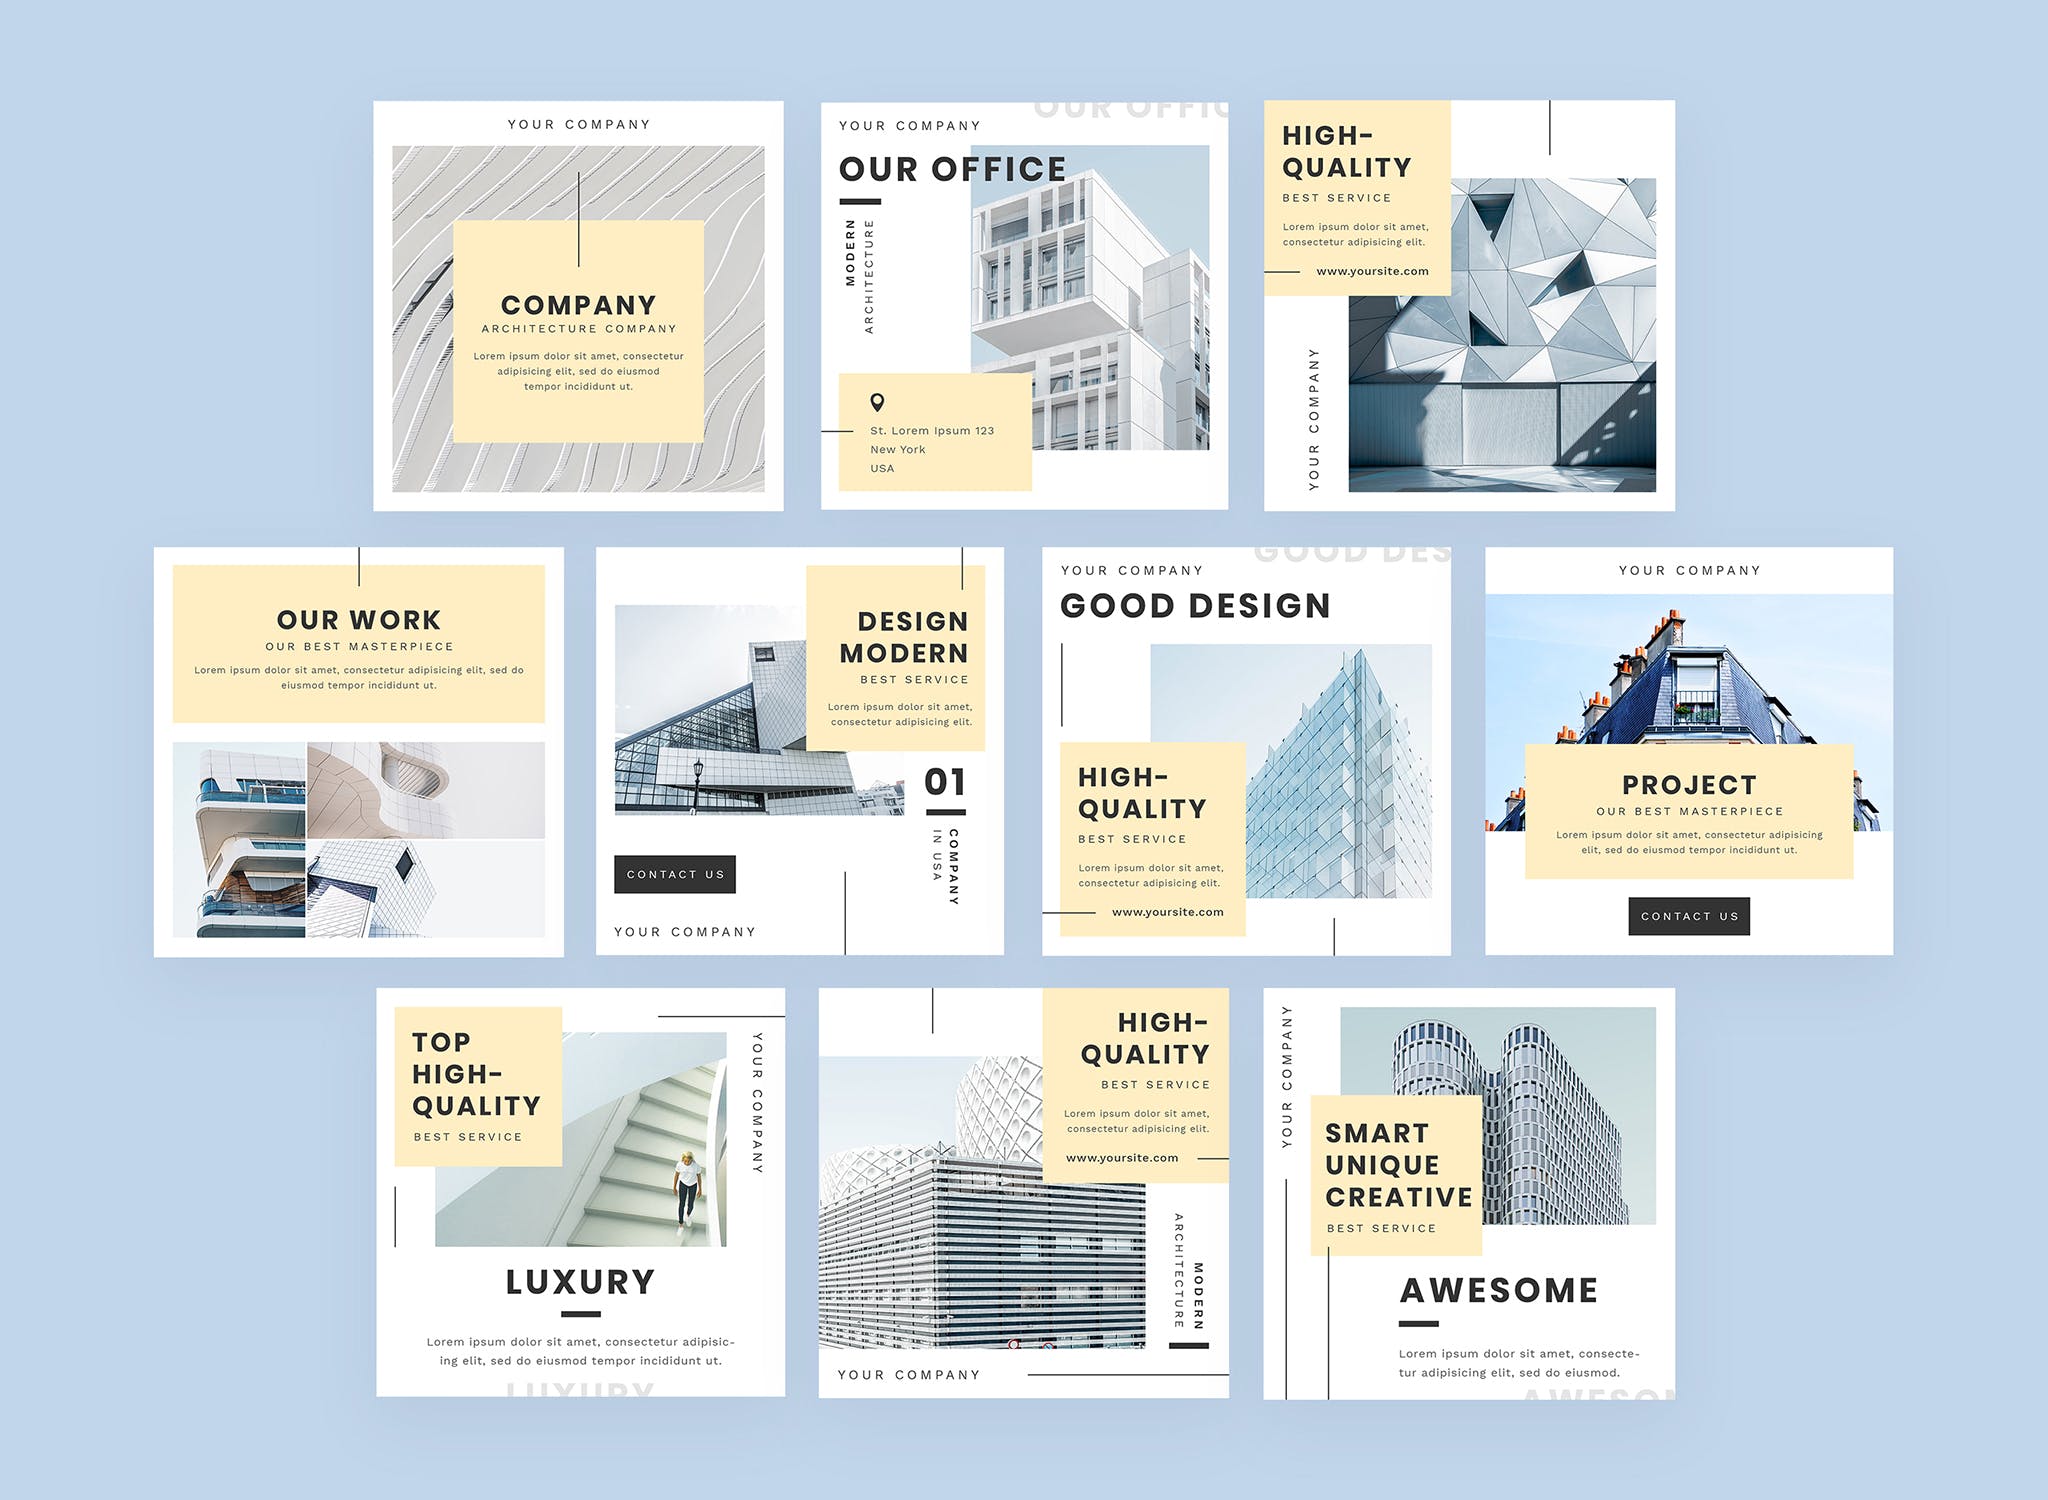 建筑设计品牌社交信息流推广设计素材包 Architecturo – Instagram Feeds Pack插图(1)